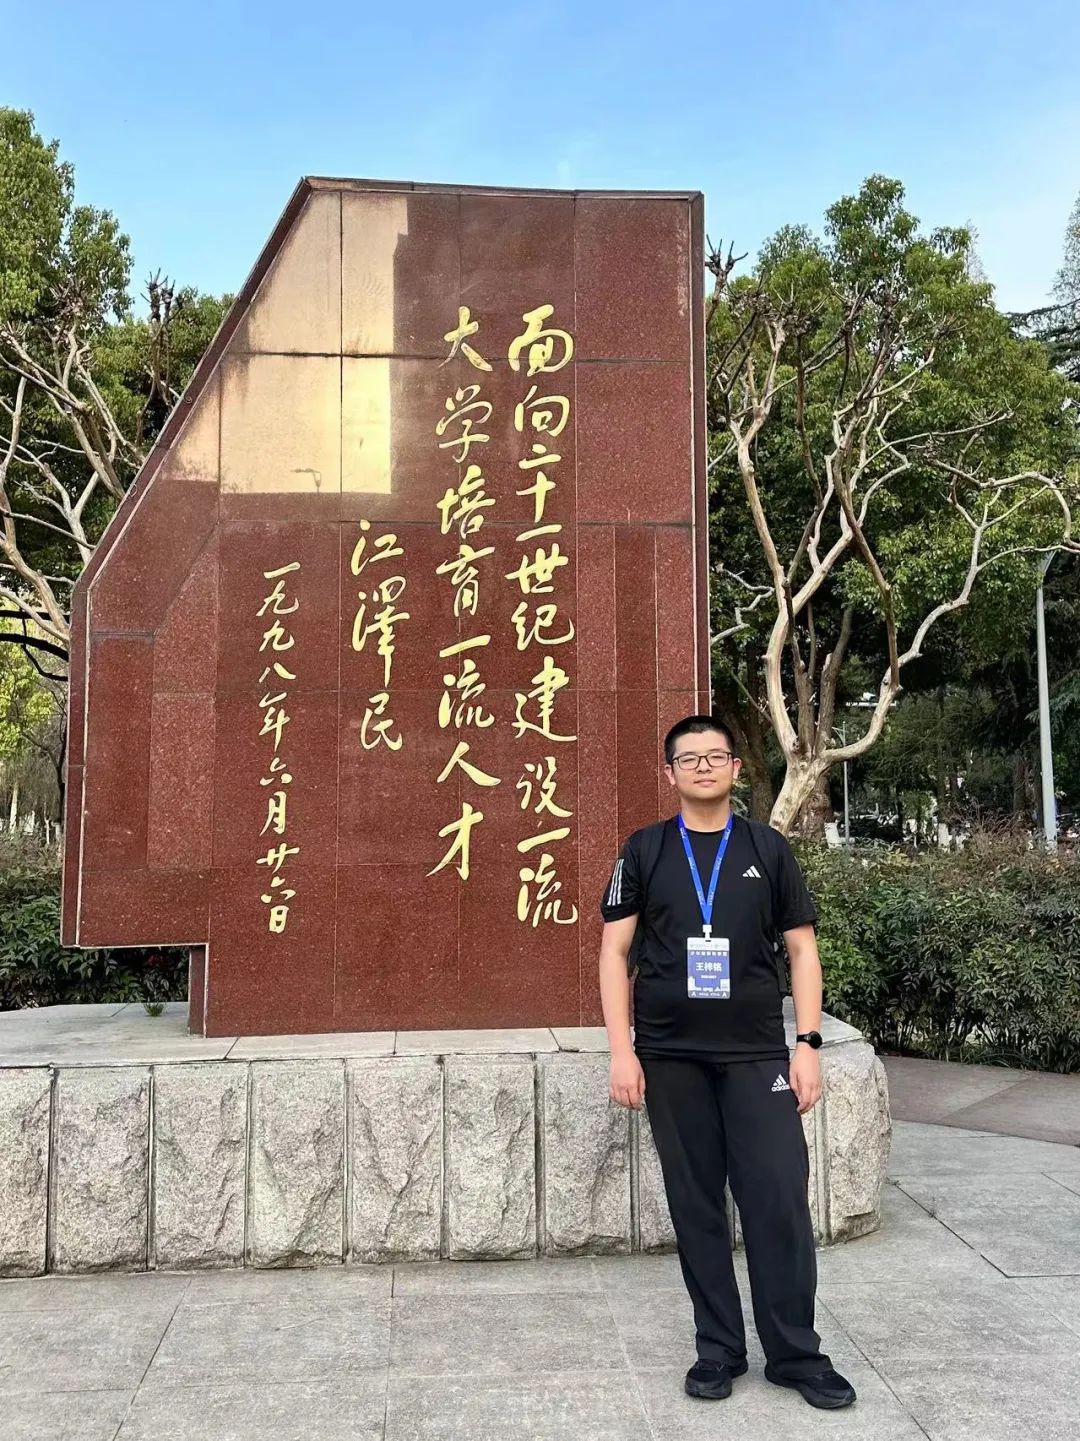 山东唯一 历城二中王梓铭被中国科学技术大学2024少年班录取